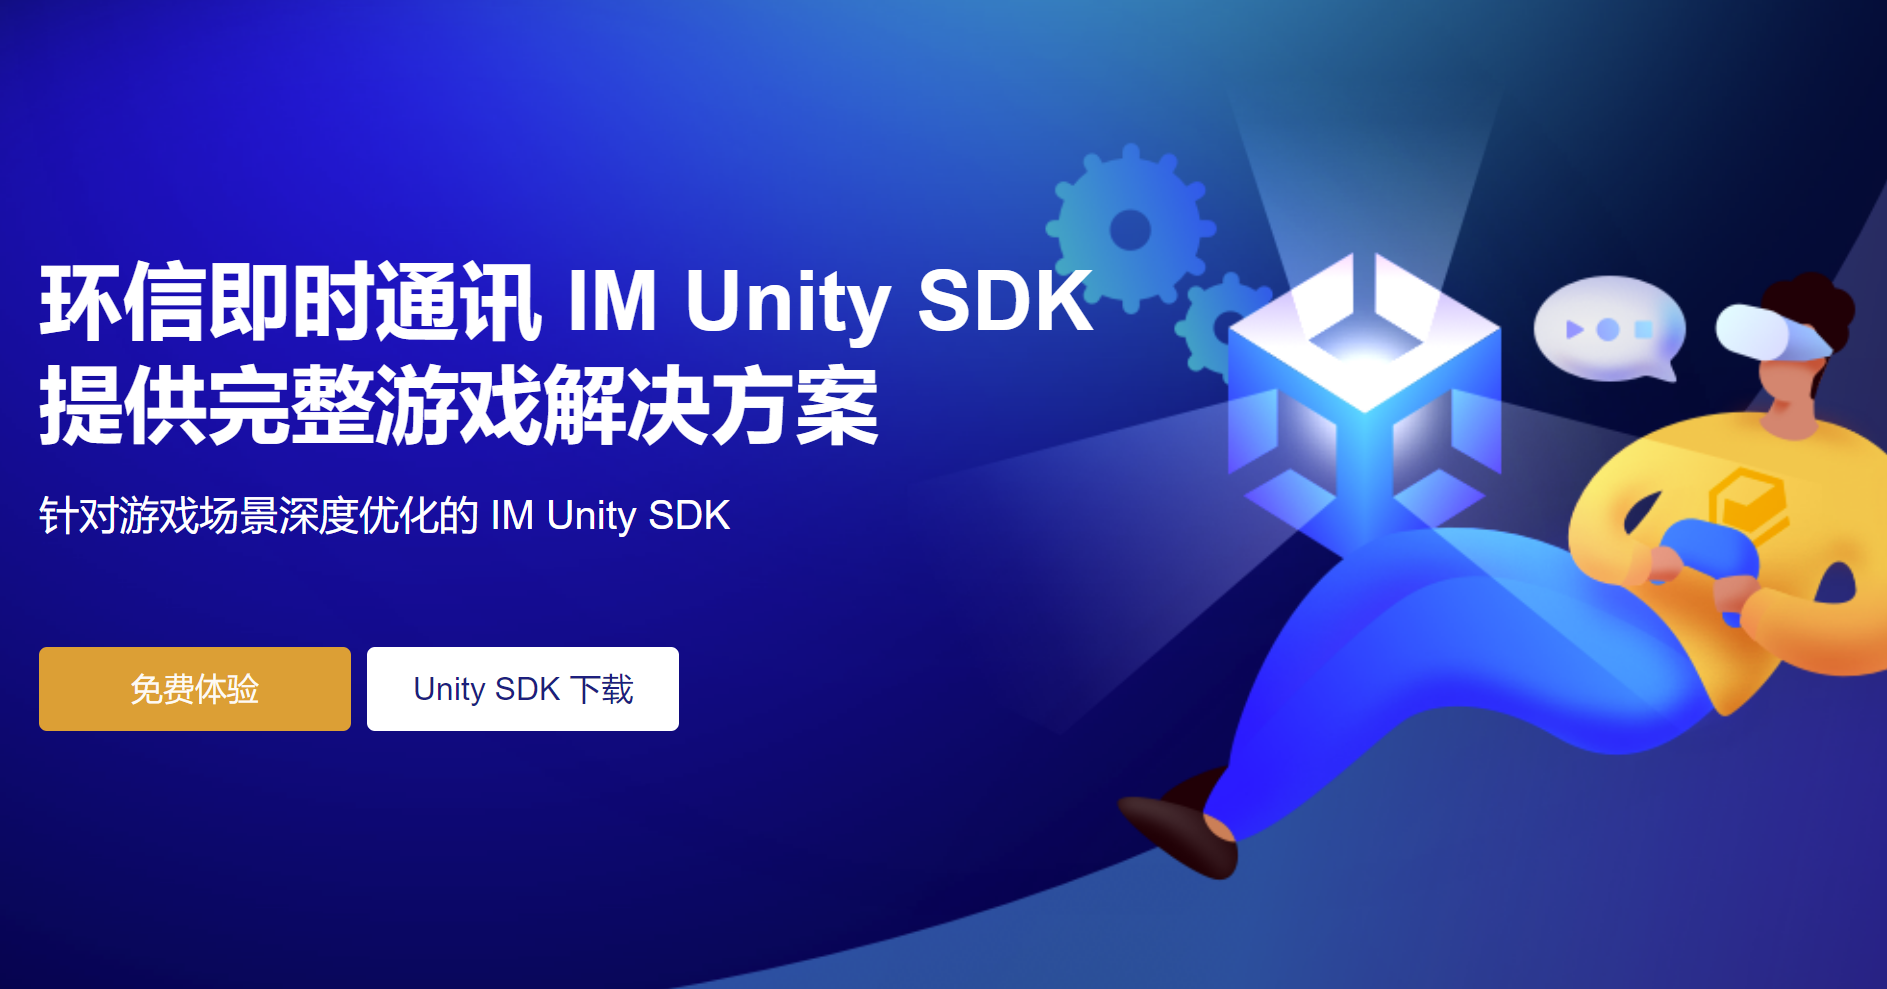 环信IM Unity SDK